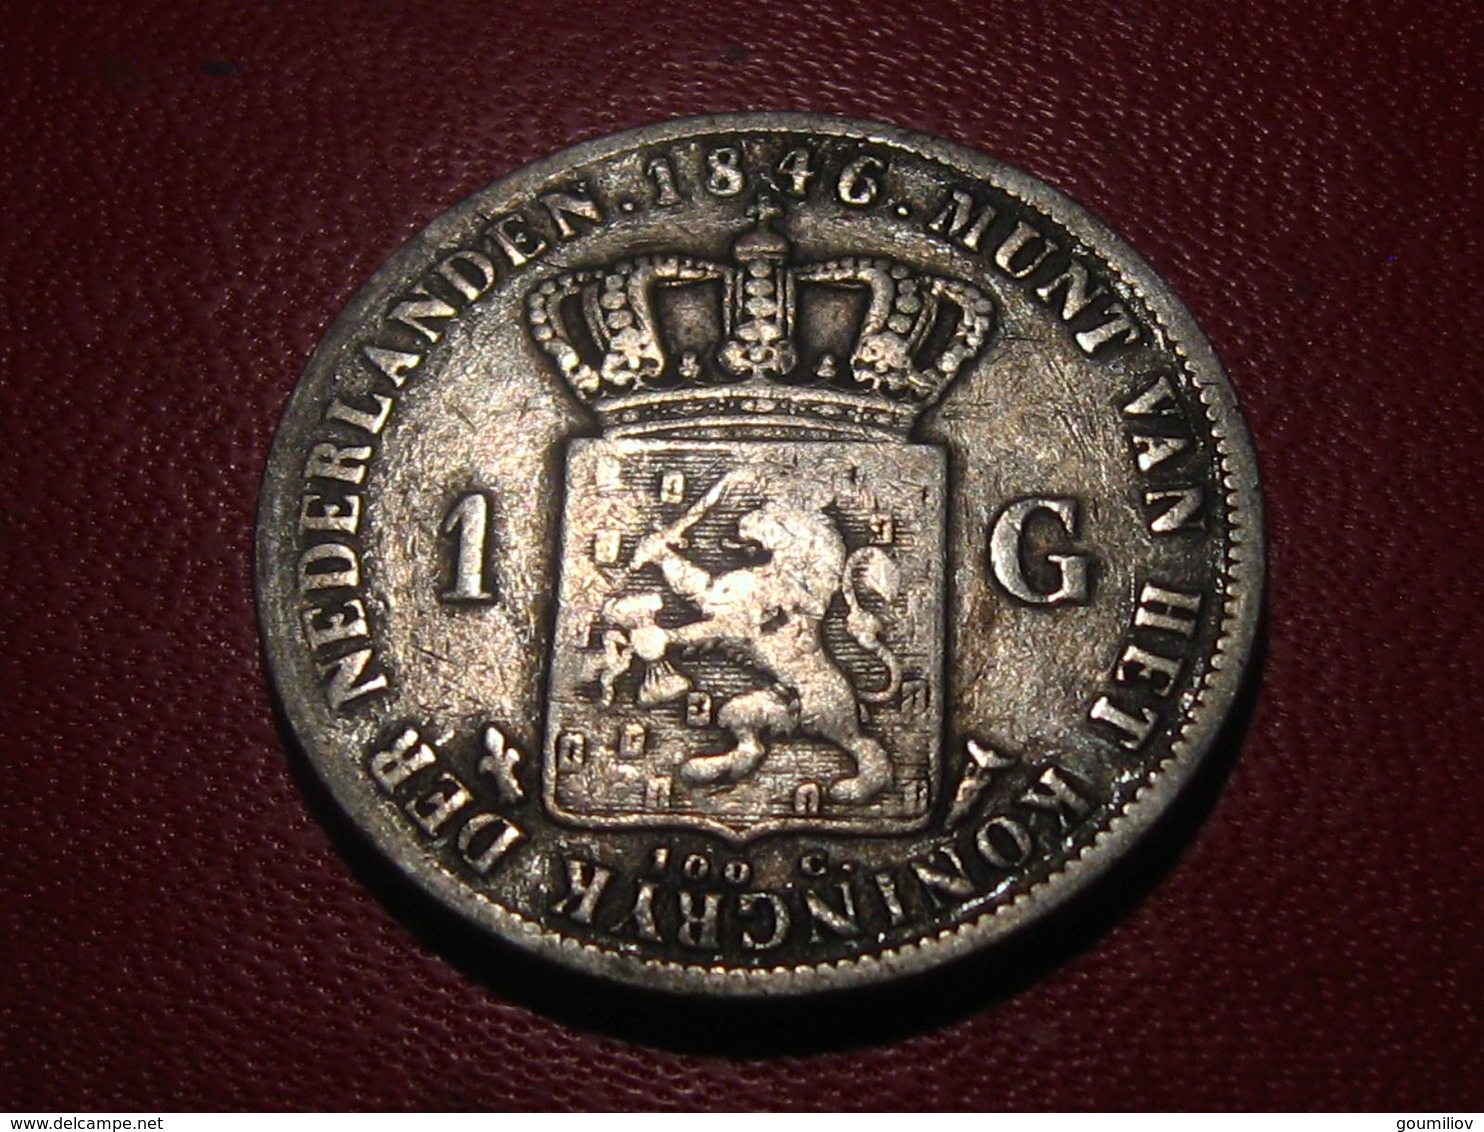 Pays-Bas - Gulden 1846 Willem II - Différent Fleur De Lys 2295 - 1840-1849 : Willem II